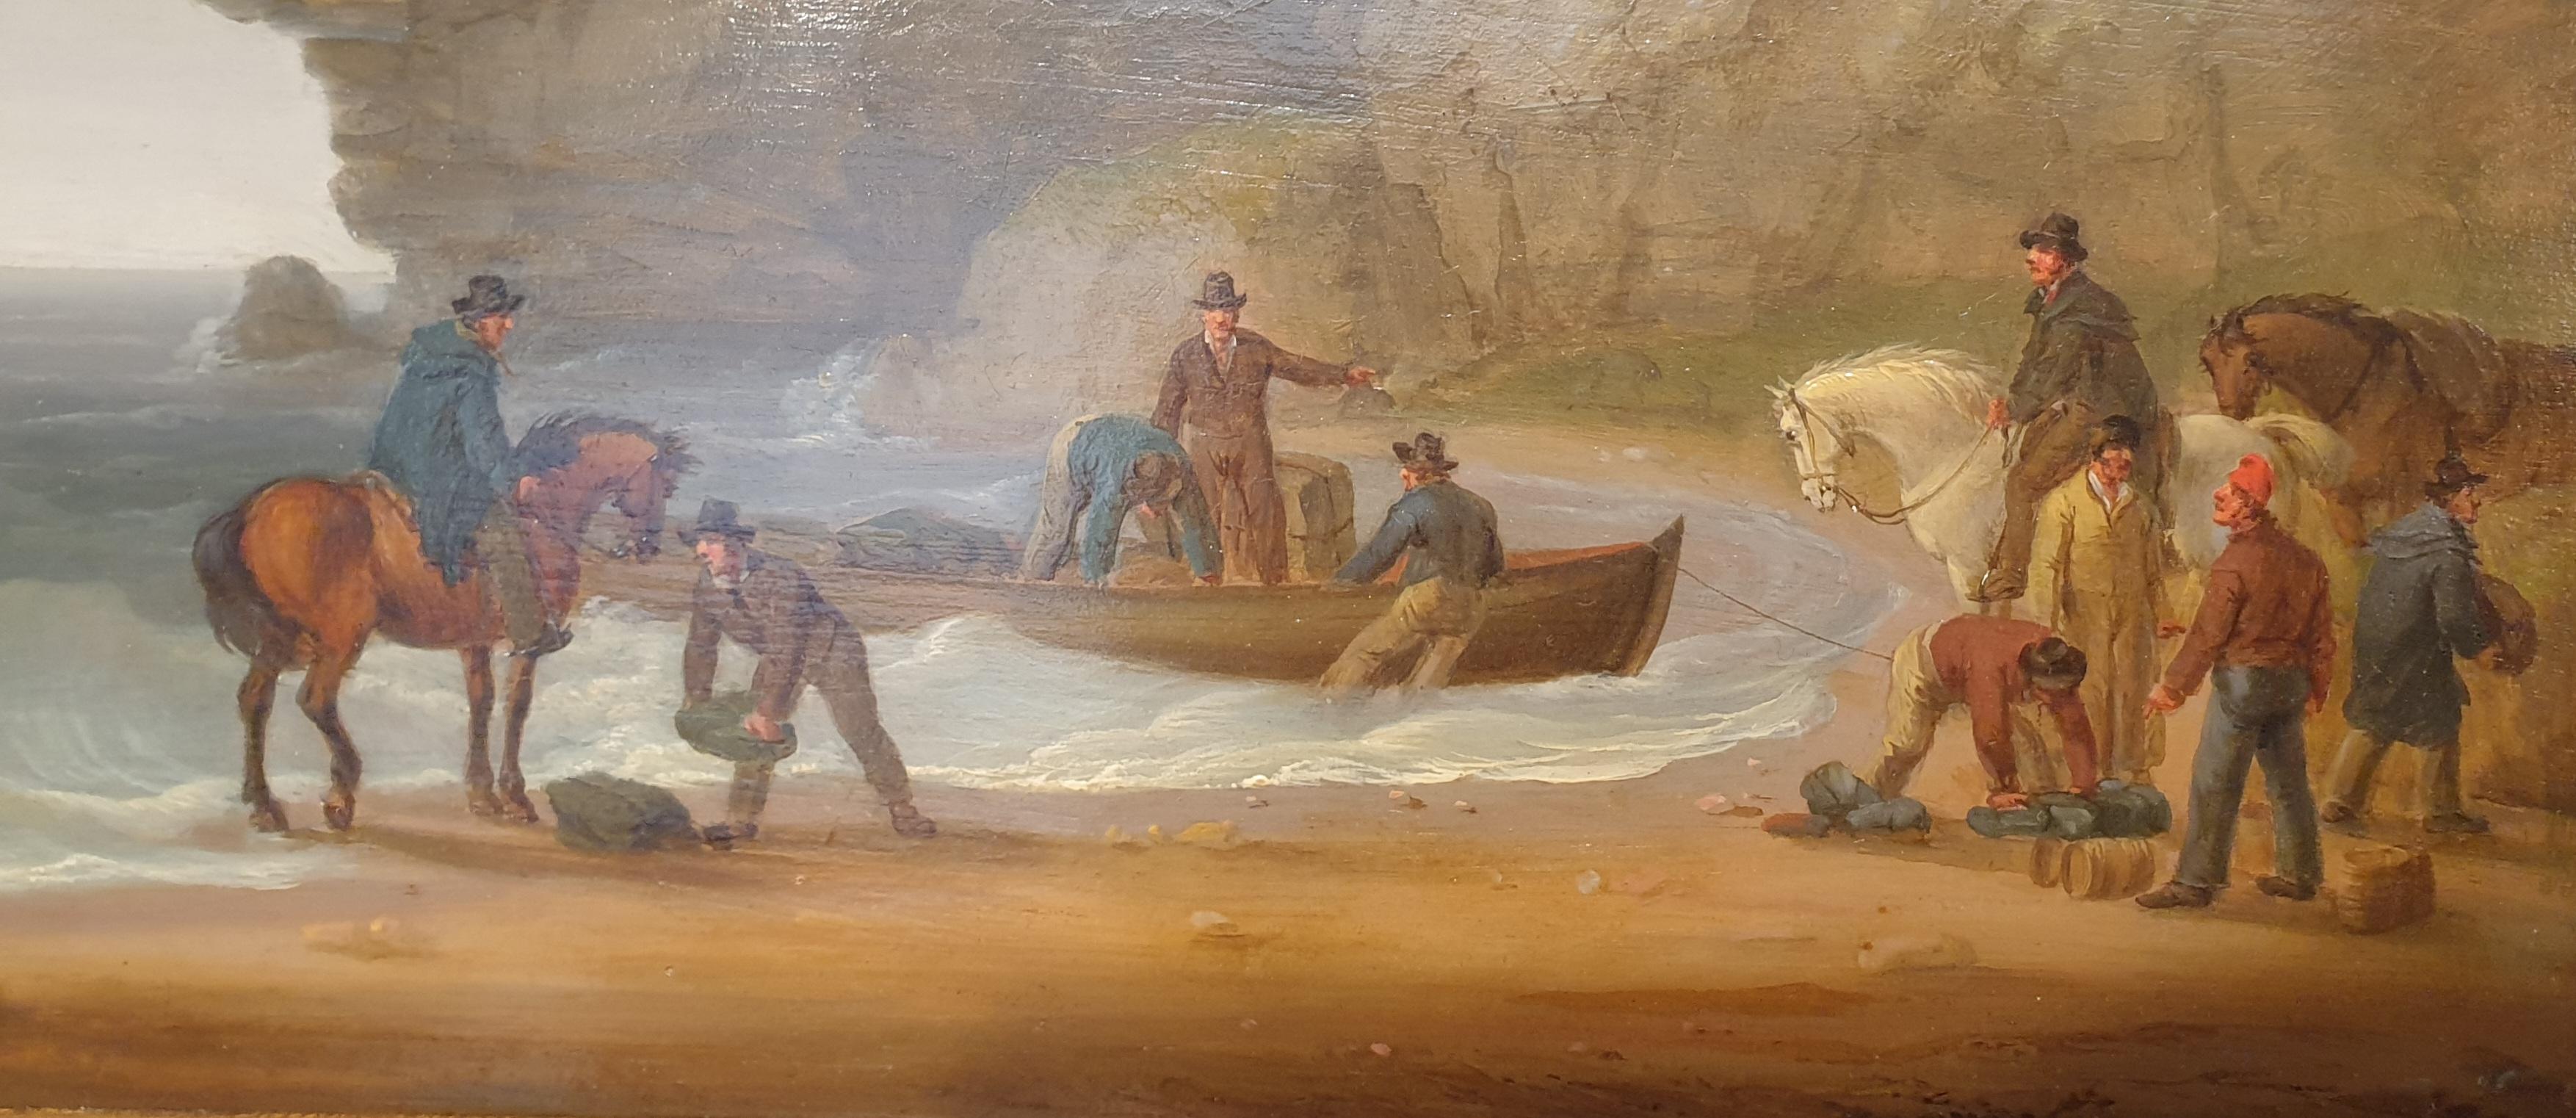 Peinture marine bord de mer bateau de contrebandiers écossais 19ème - Painting de William Anderson